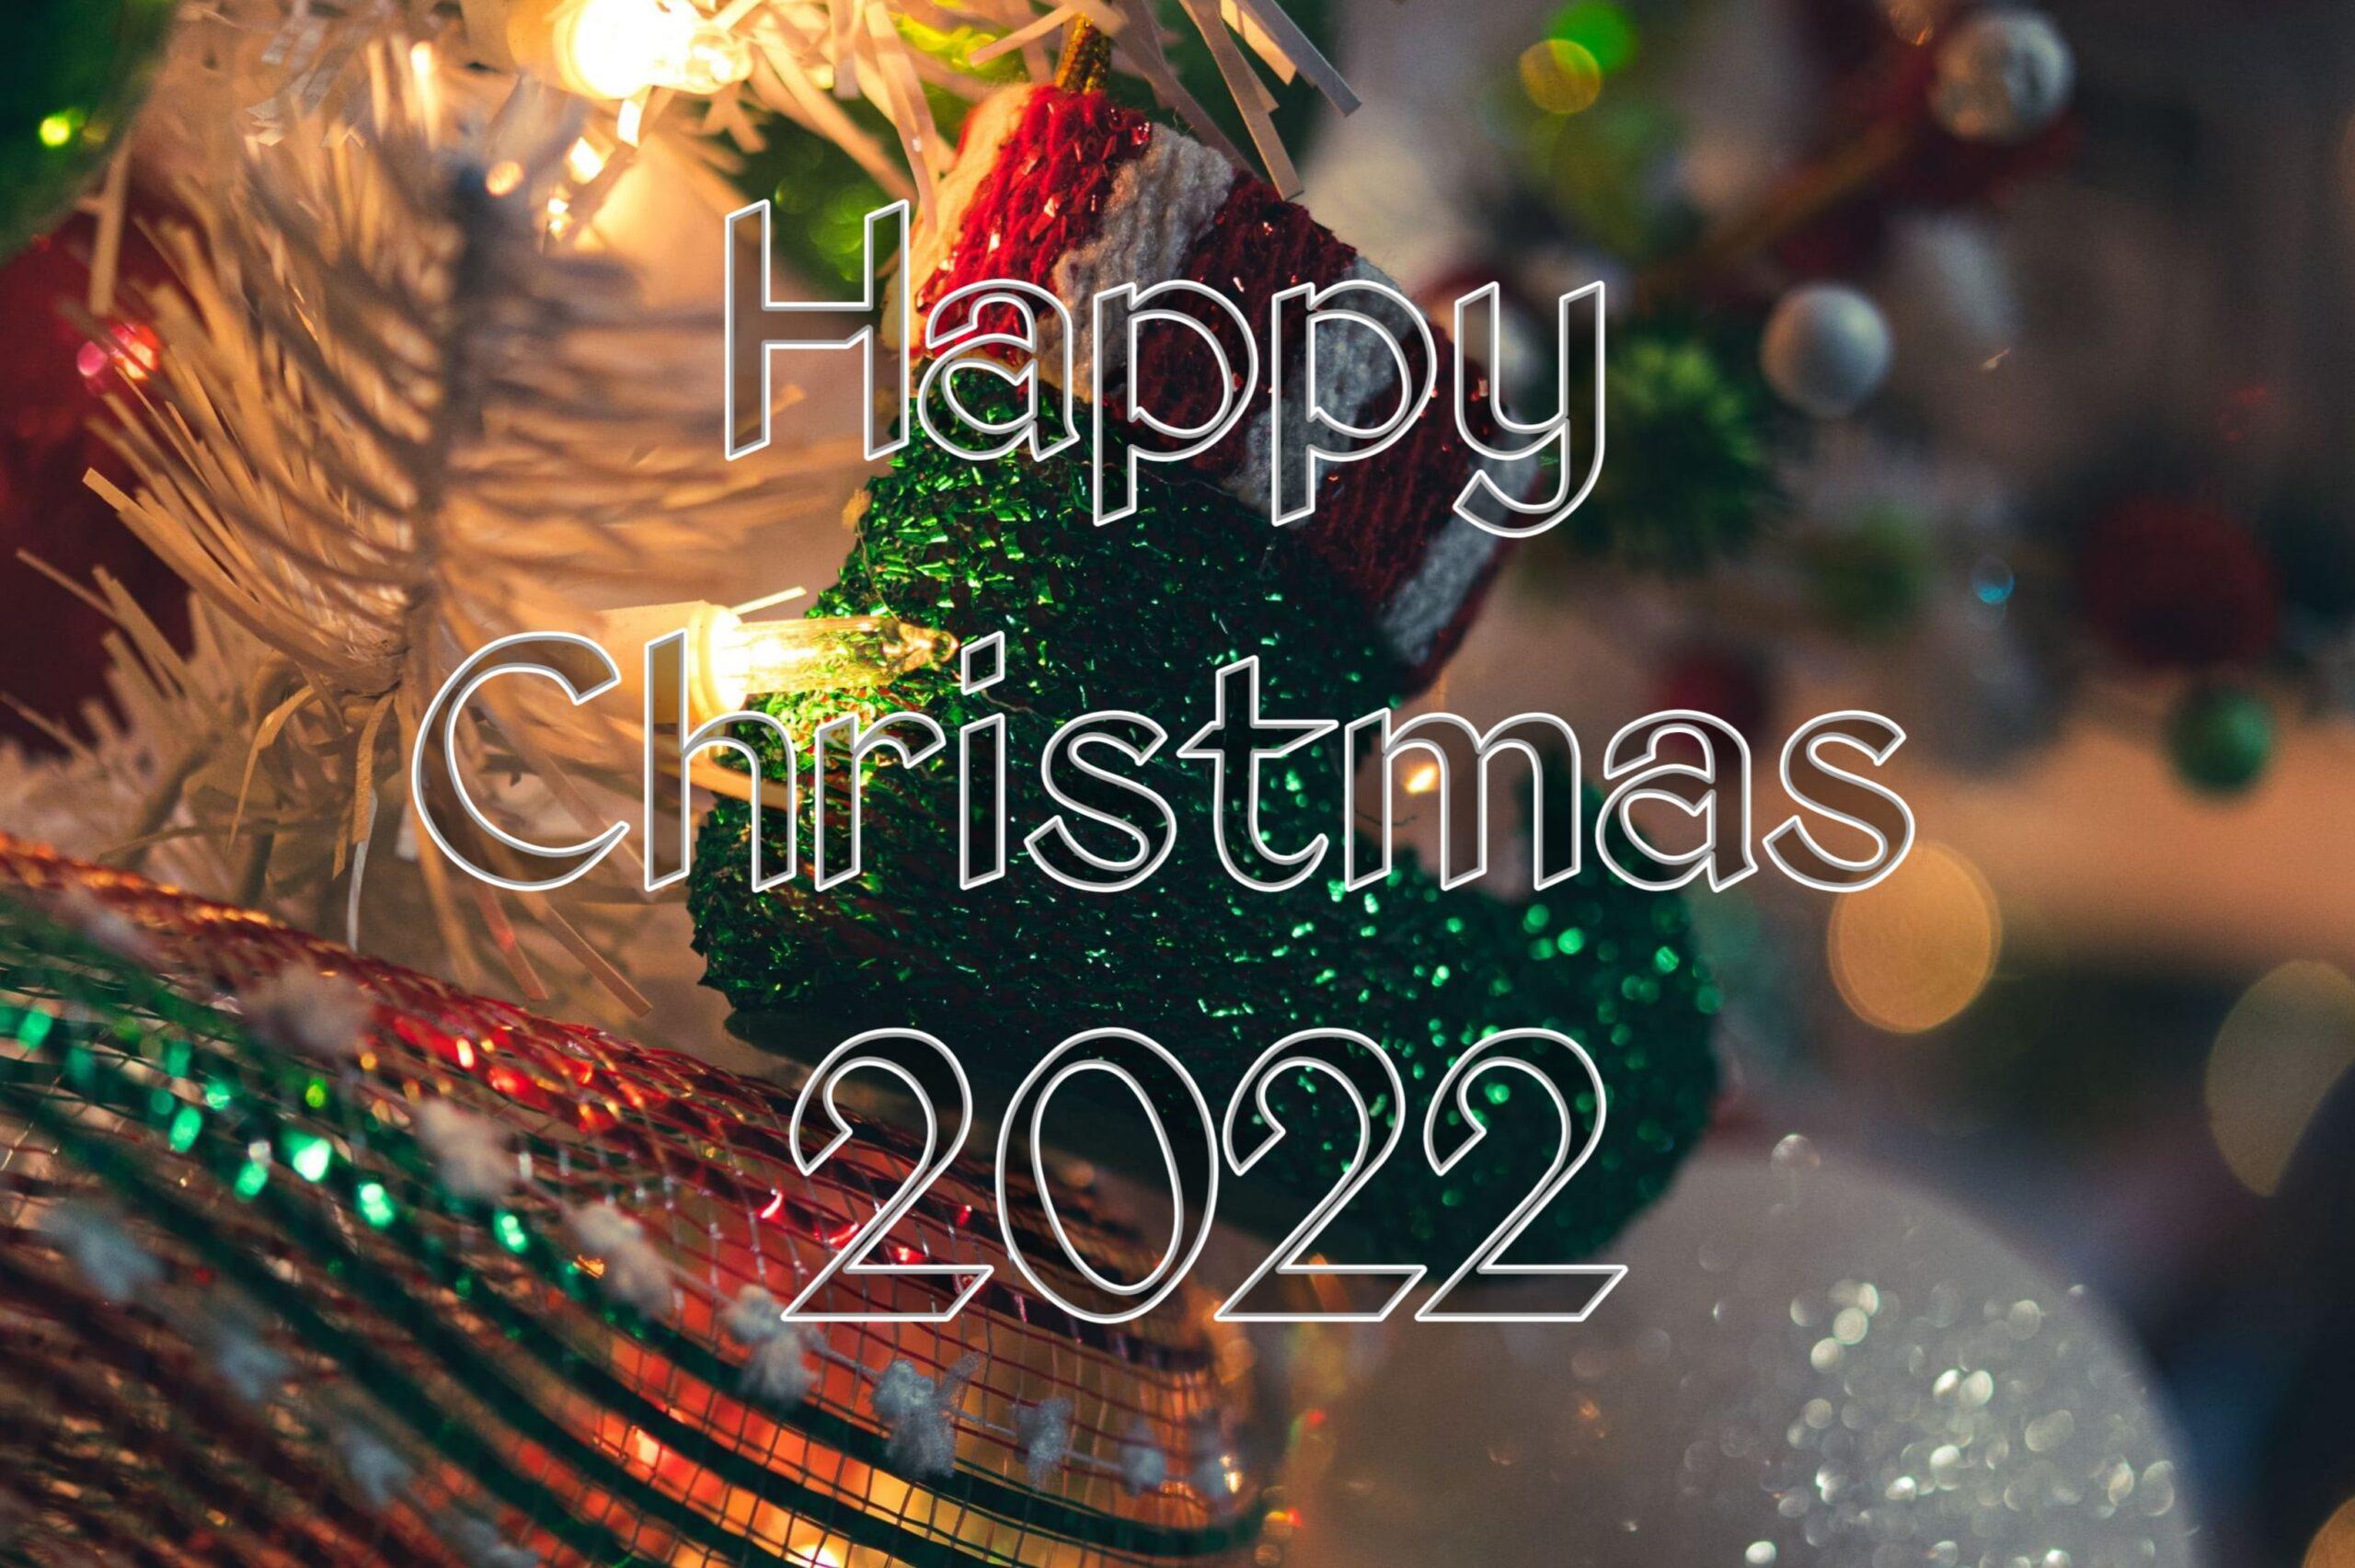 Hãy dành chút thời gian để thưởng thức những hình nền Giáng Sinh độc đáo, tuyệt đẹp và ấm áp nhất trong mùa lễ hội sắp tới. Điểm qua bộ sưu tập wallpaper Giáng Sinh 2022 ngay để không bỏ lỡ bất kỳ hình ảnh nào.